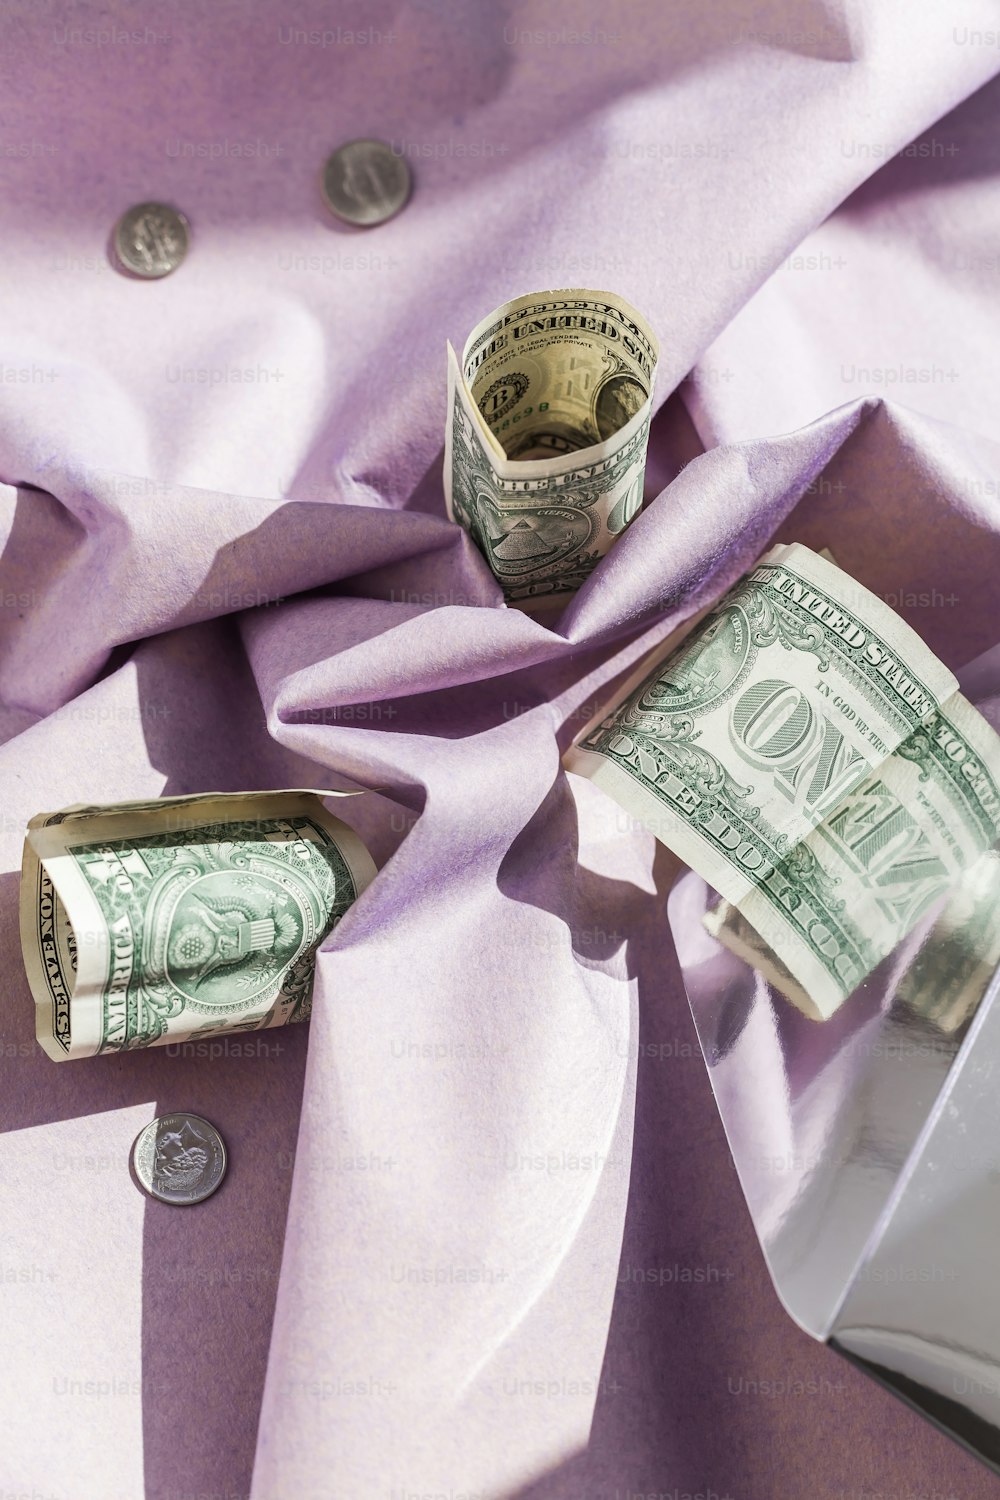 お金のロールが紫色の布の上に置かれています